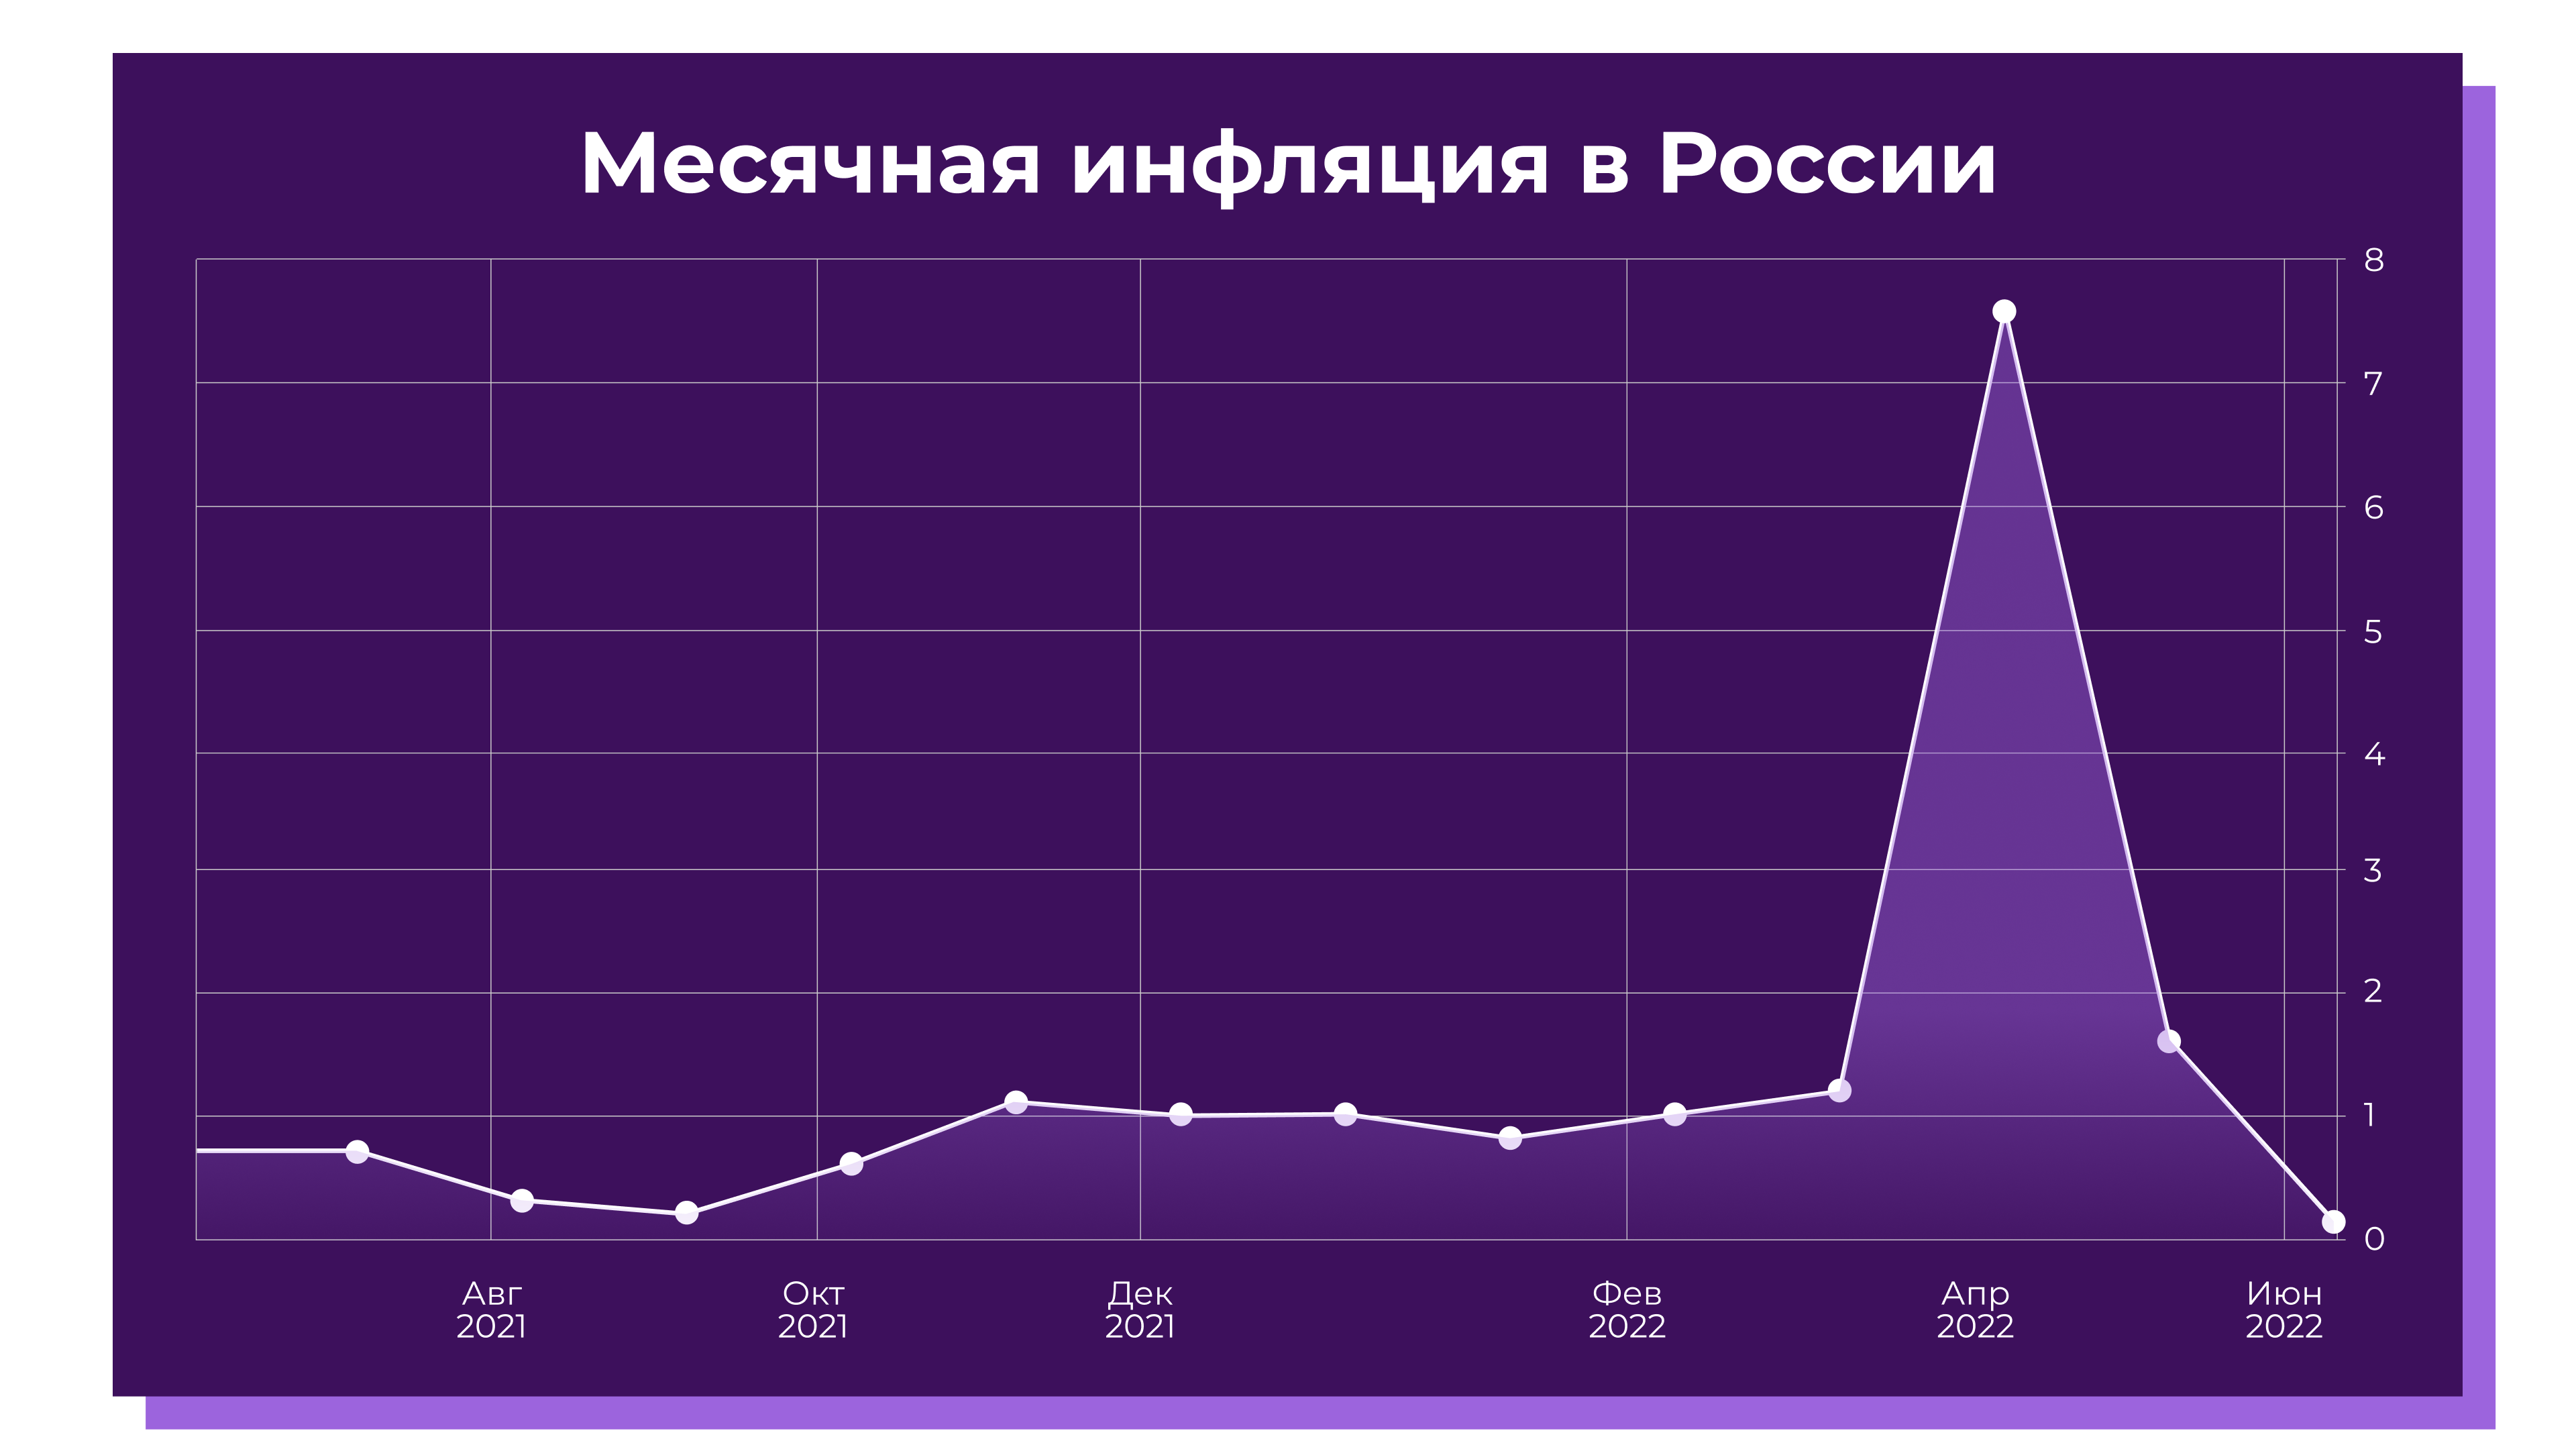 Месячная инфляция в России август 2021 - июнь 2022